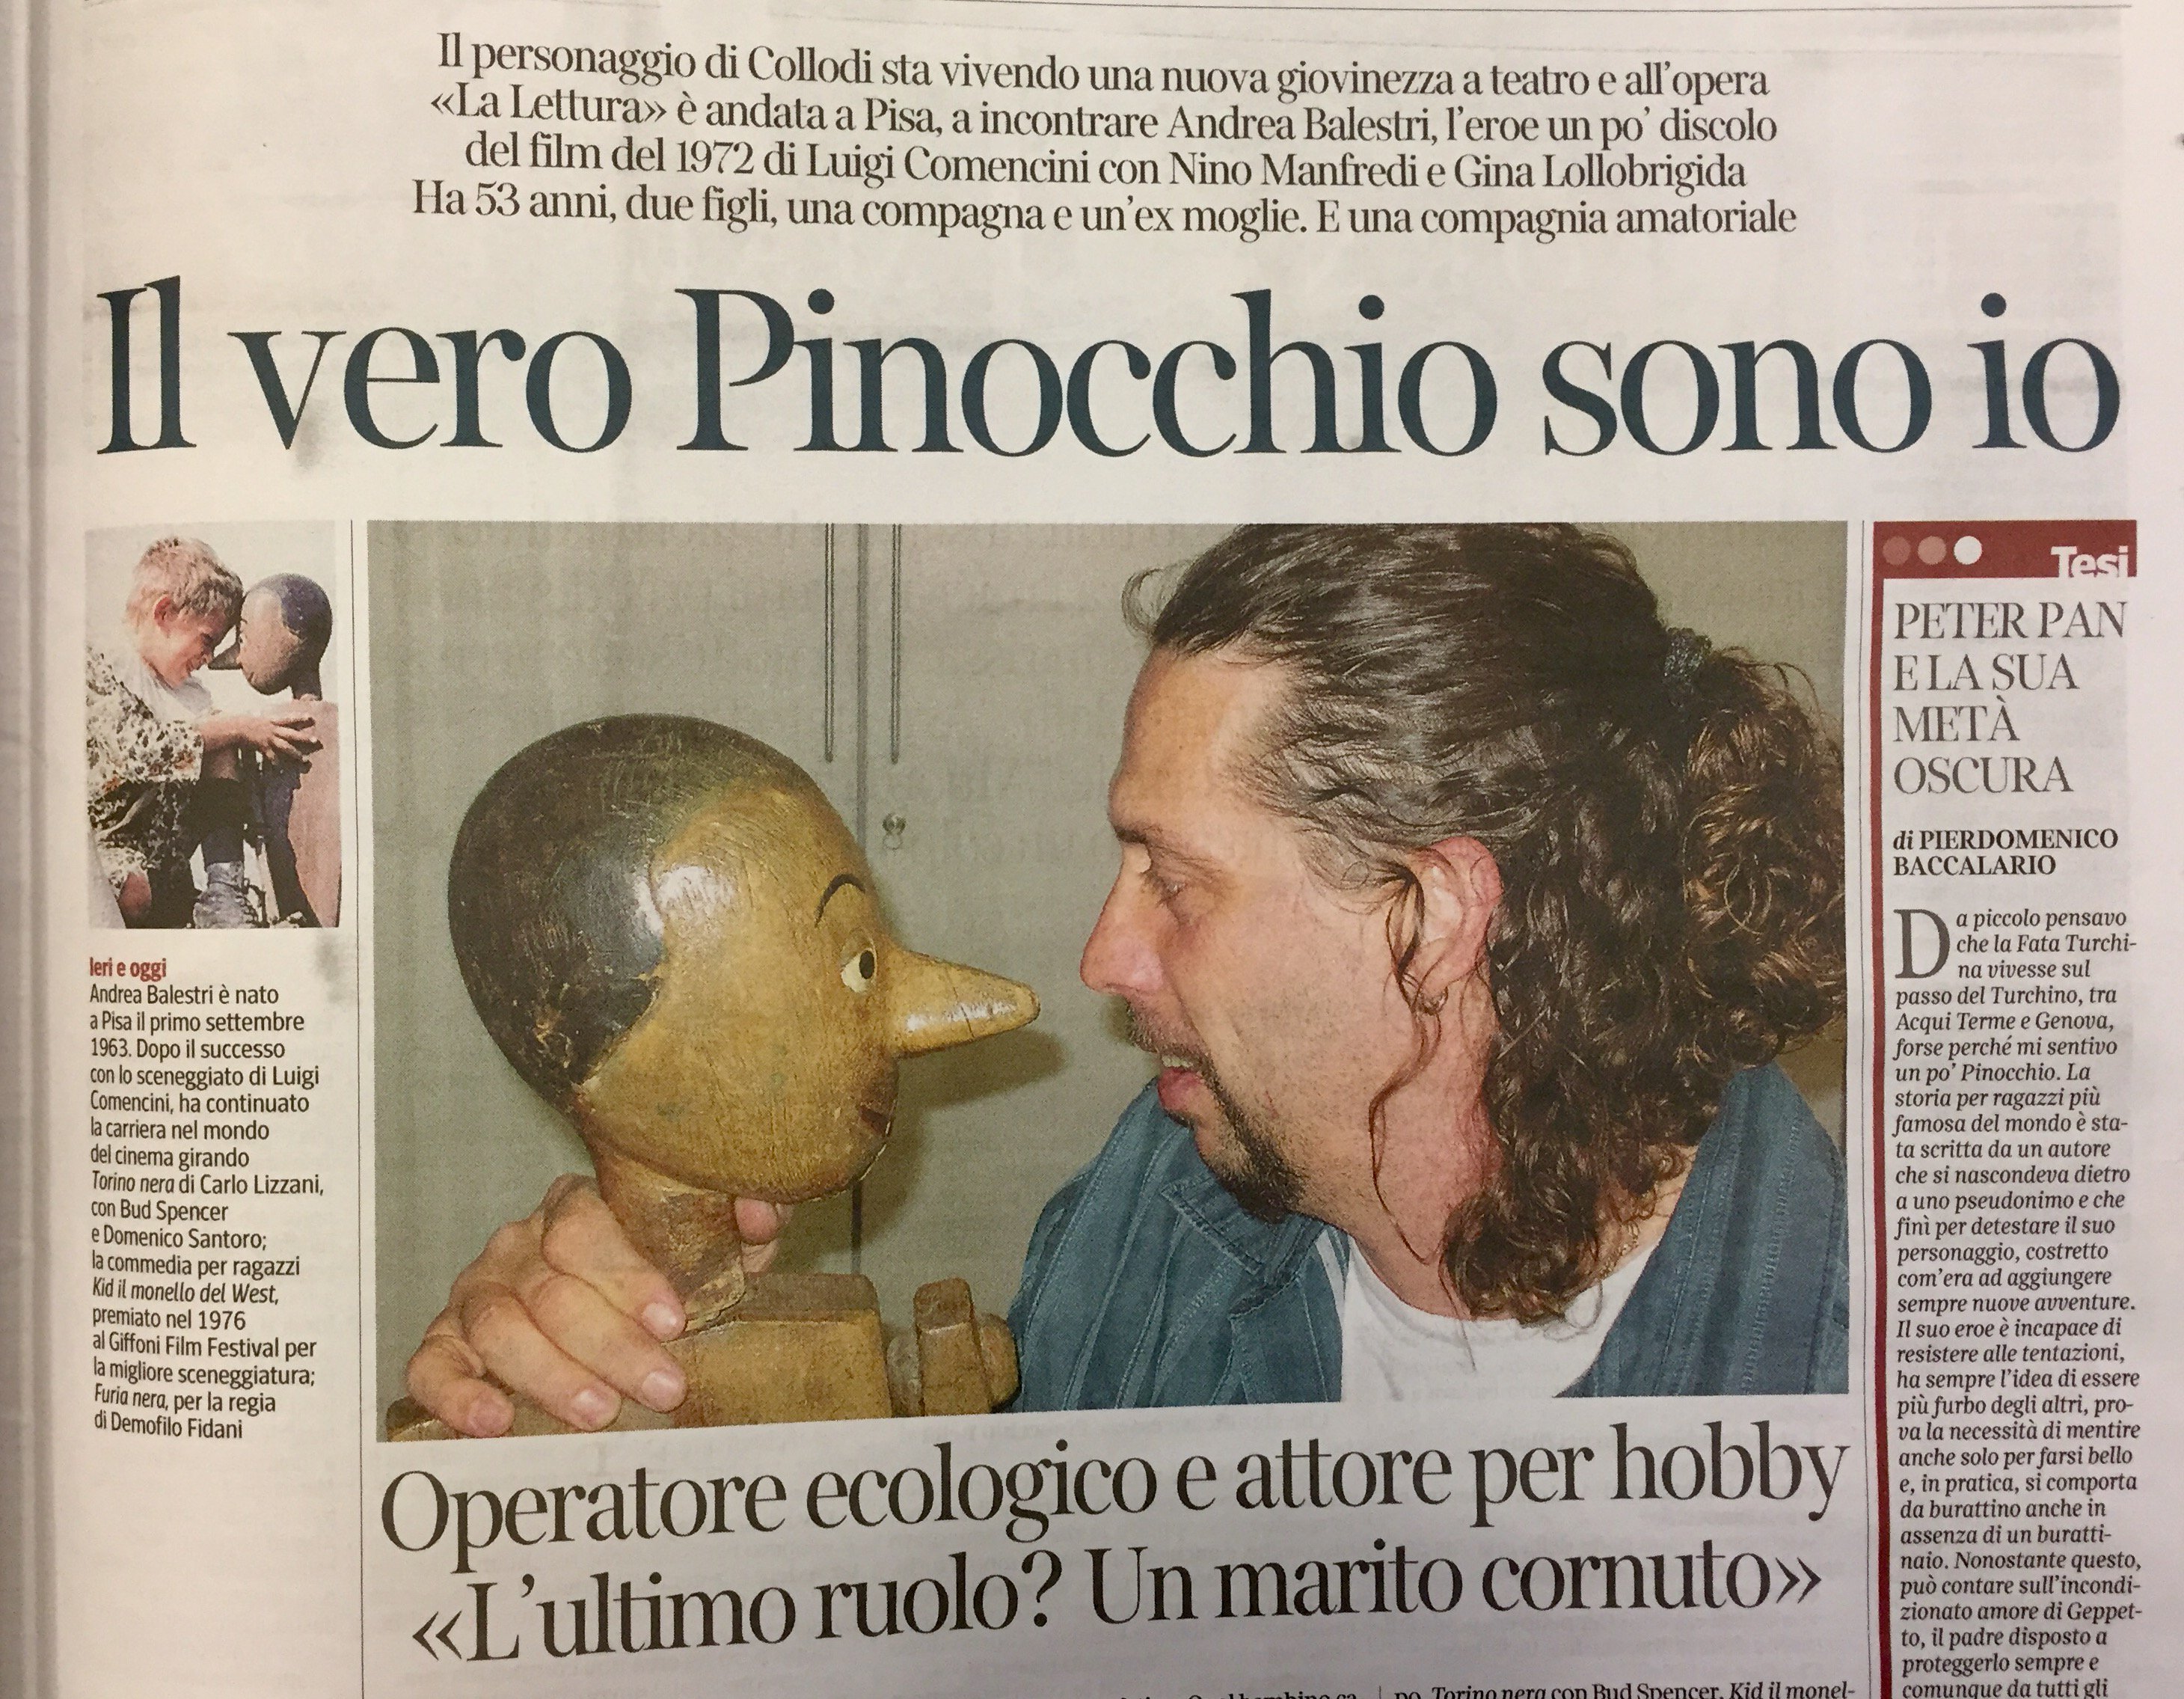 la_lettura on Twitter: "Andrea Balestri interpretò Pinocchio nel film di  Luigi Comencini. Oggi è attore per hobby. L'intervista di @teresaciabatti  #vivalaLettura https://t.co/uqOt7gINlj" / Twitter